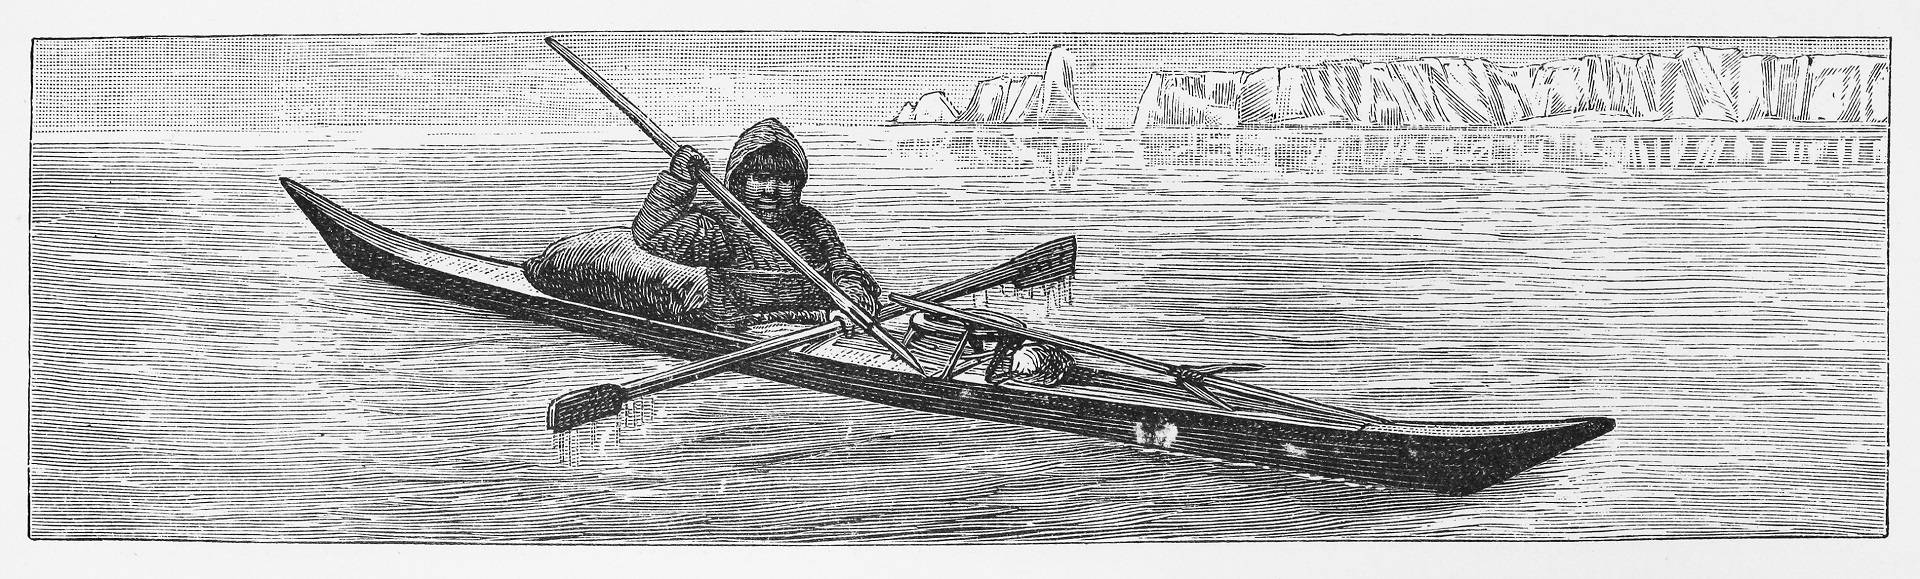 Каяк лодка эскимосов